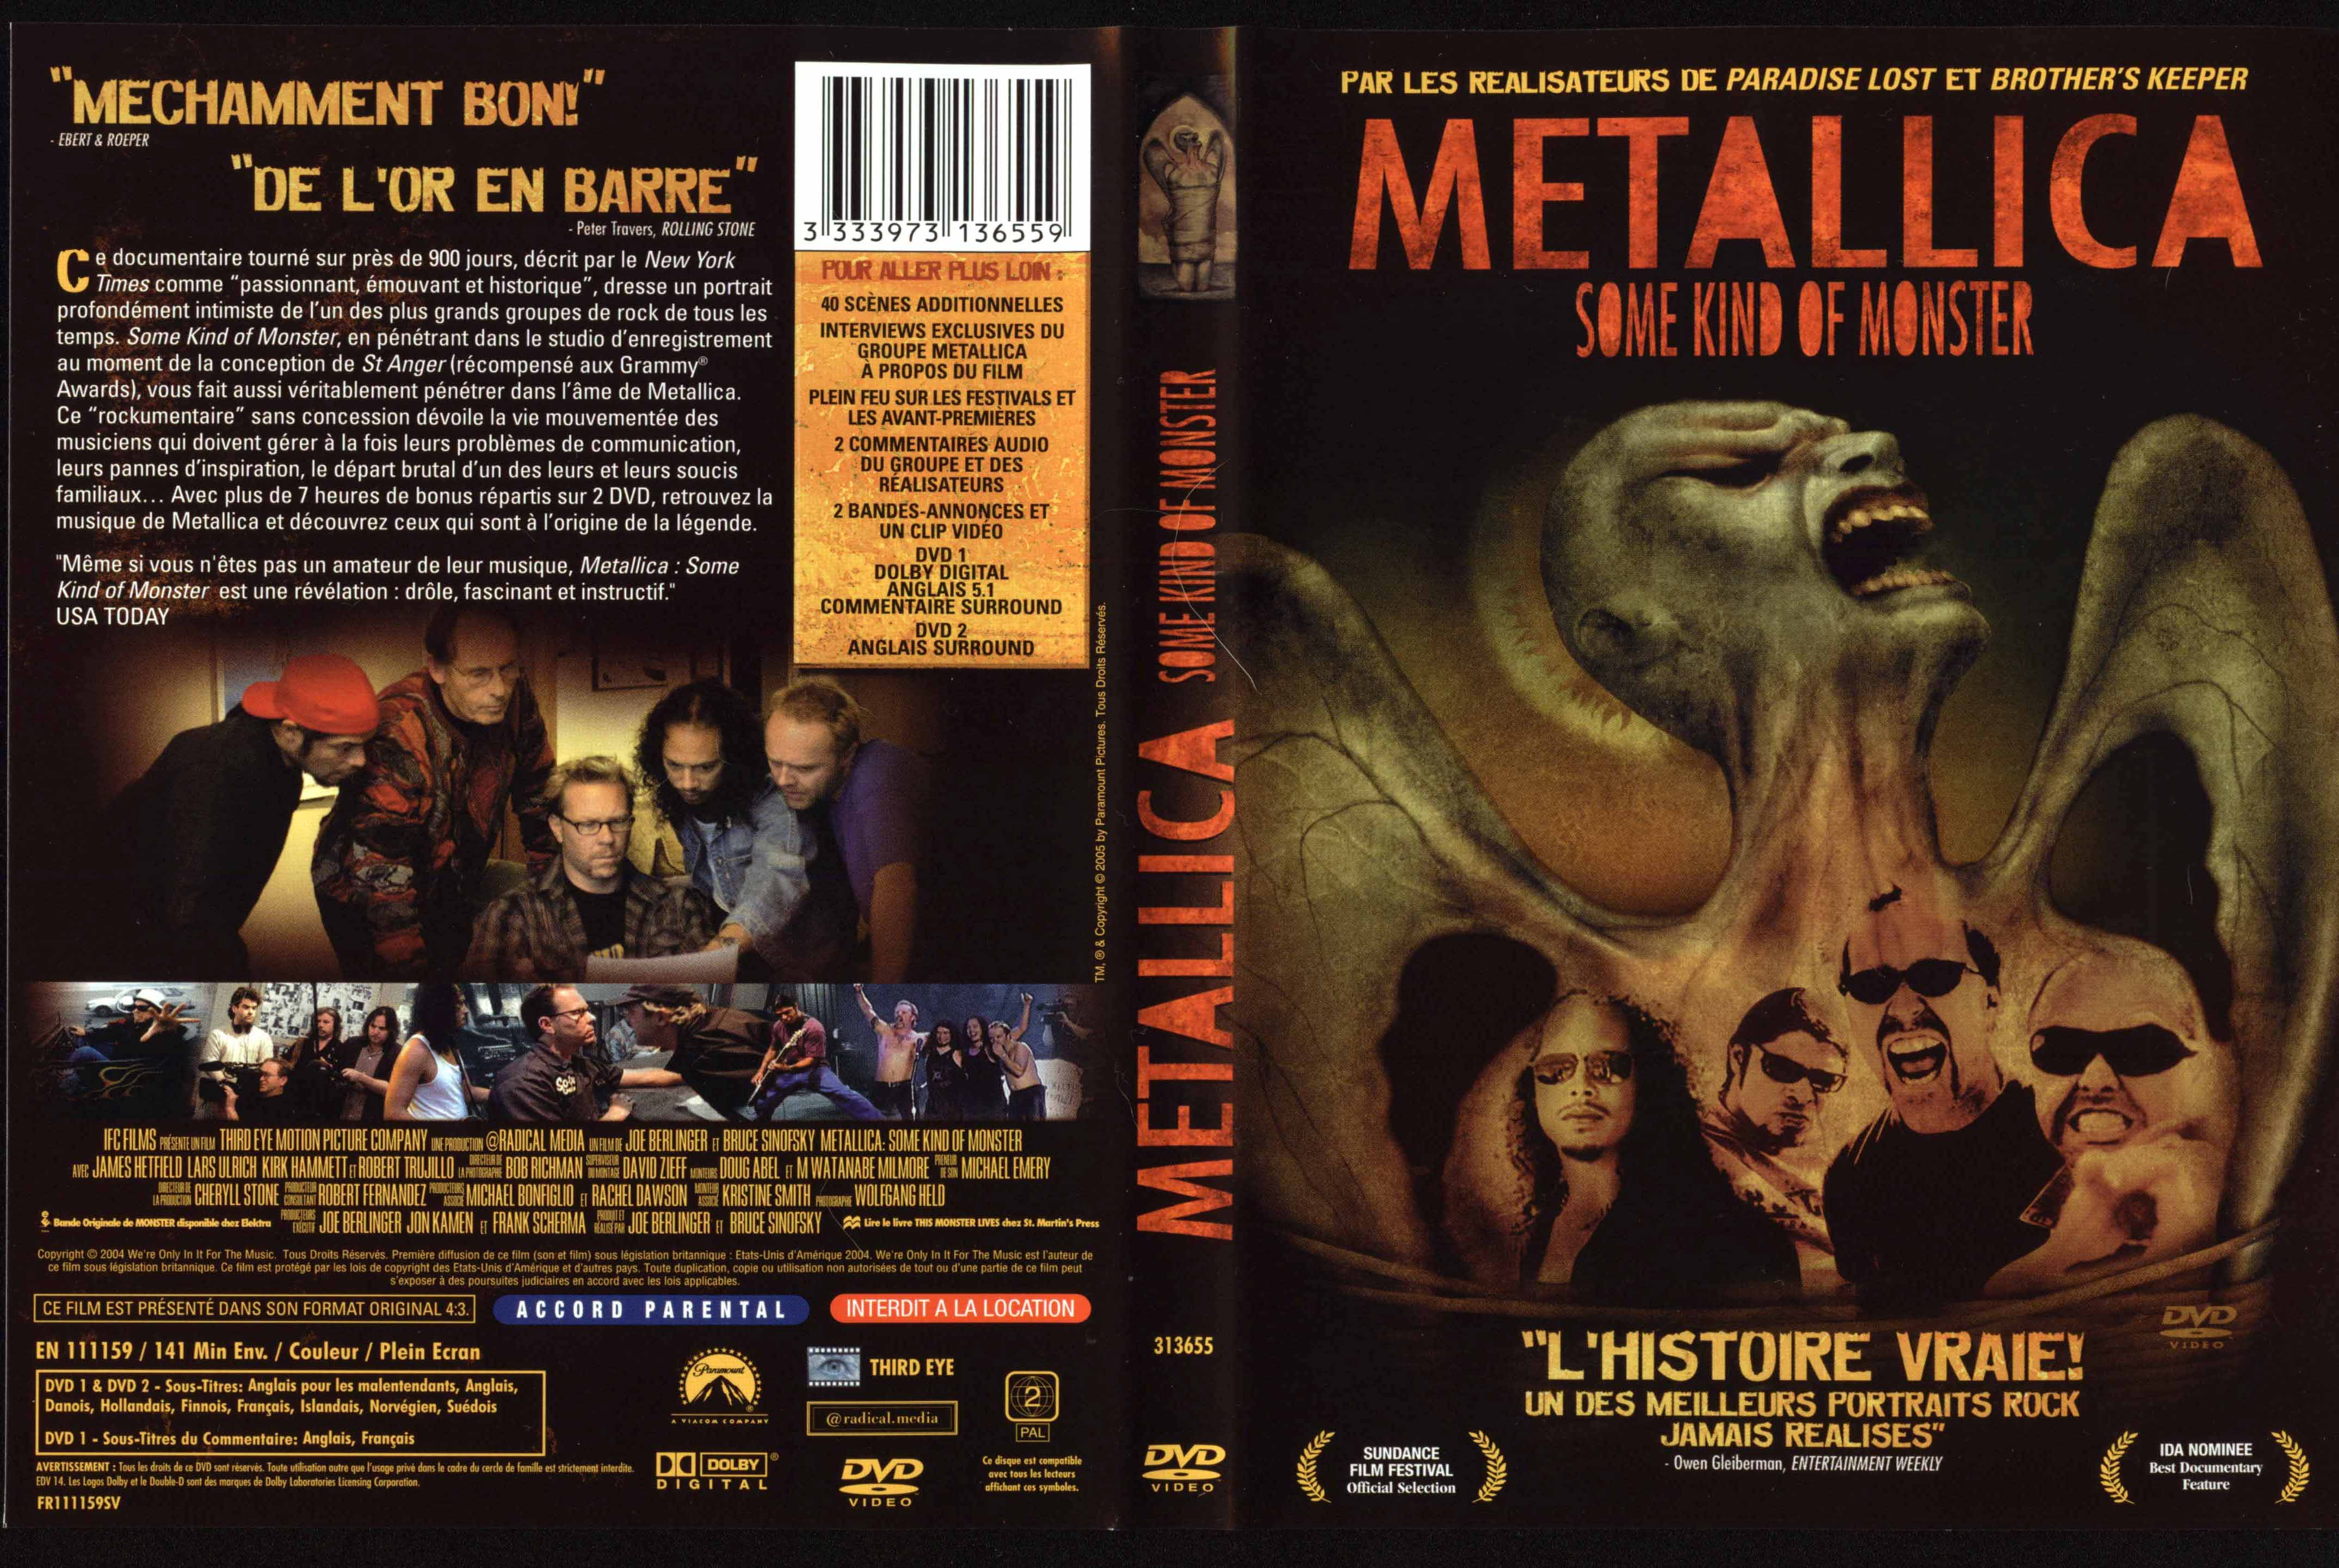 Jaquette DVD Metallica some kind of monster v2